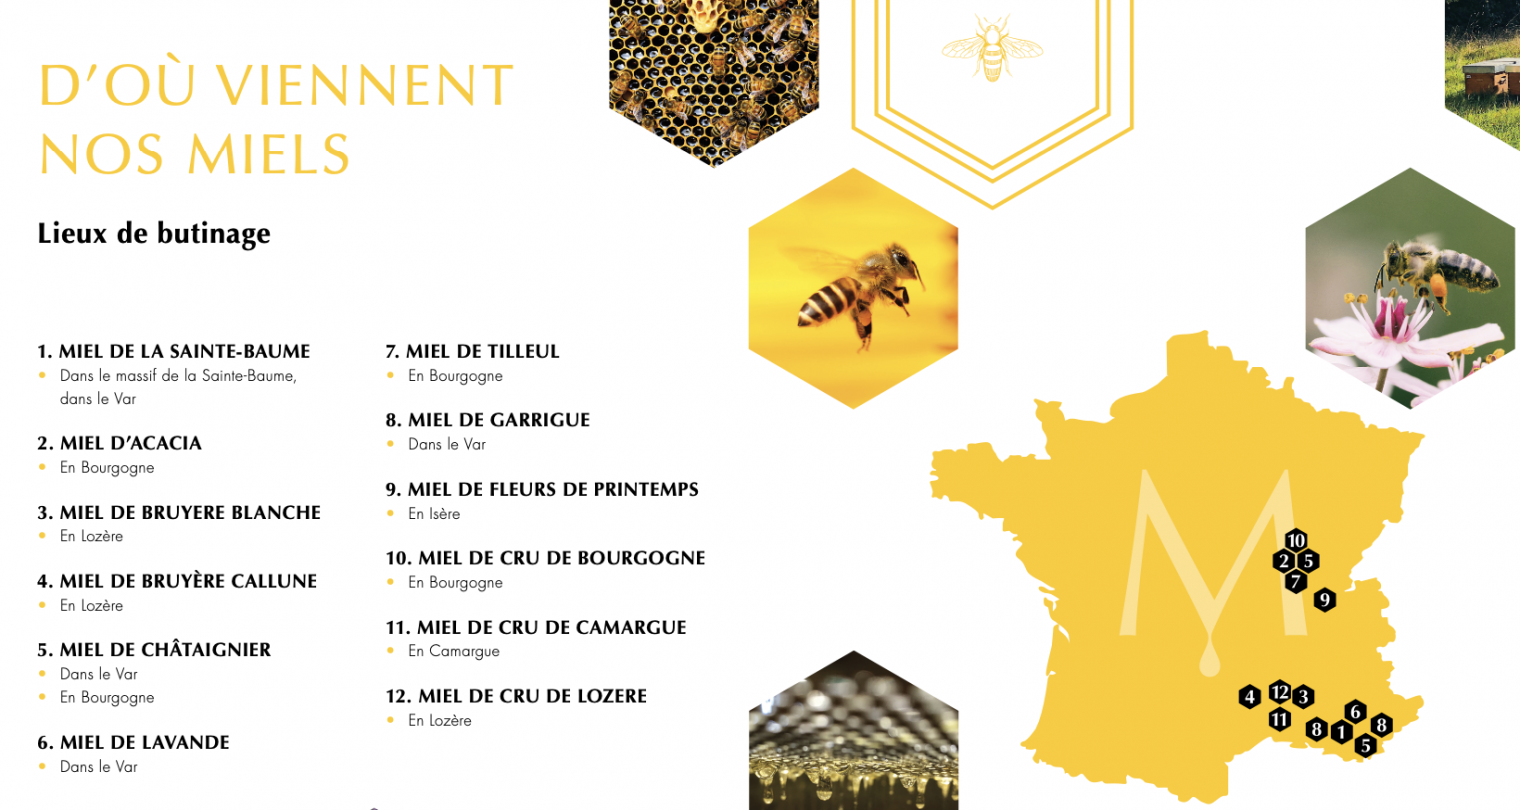 #traçabilité #transparence #miel #madeinfrance #mieldefrance #apidologie #hautdegamme #luxe #excellence #mielluxe #apiculture #apiculteurécoltant #abeille #miellavande #mielsaintebaume #mielprovence #épicerie #épicerfine #mielbourgogne #cadeau #nature #biodiversité #provence